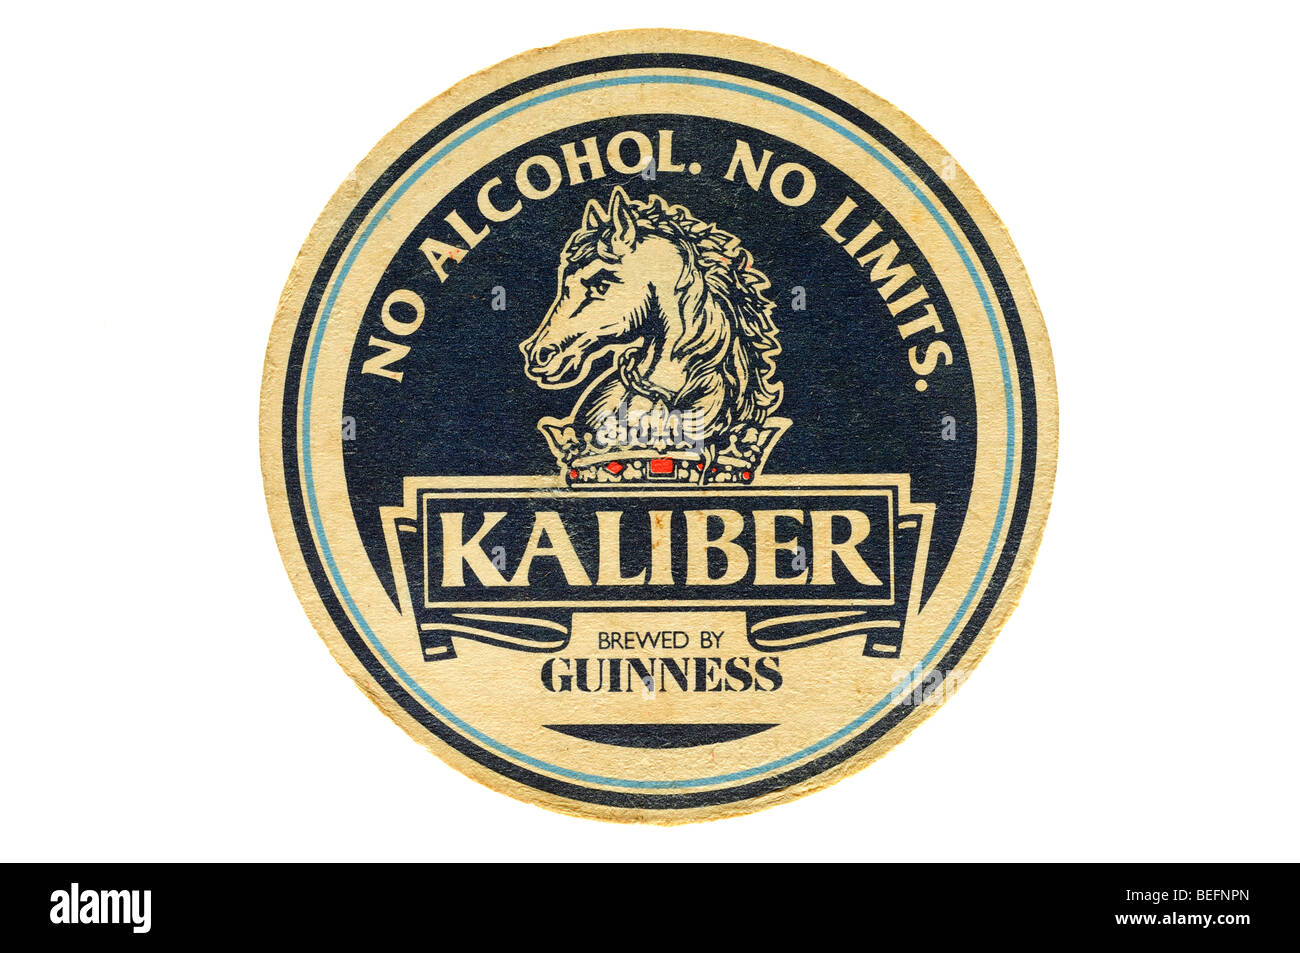 No alcohol sin límites kaliber fabricada por guiness Foto de stock